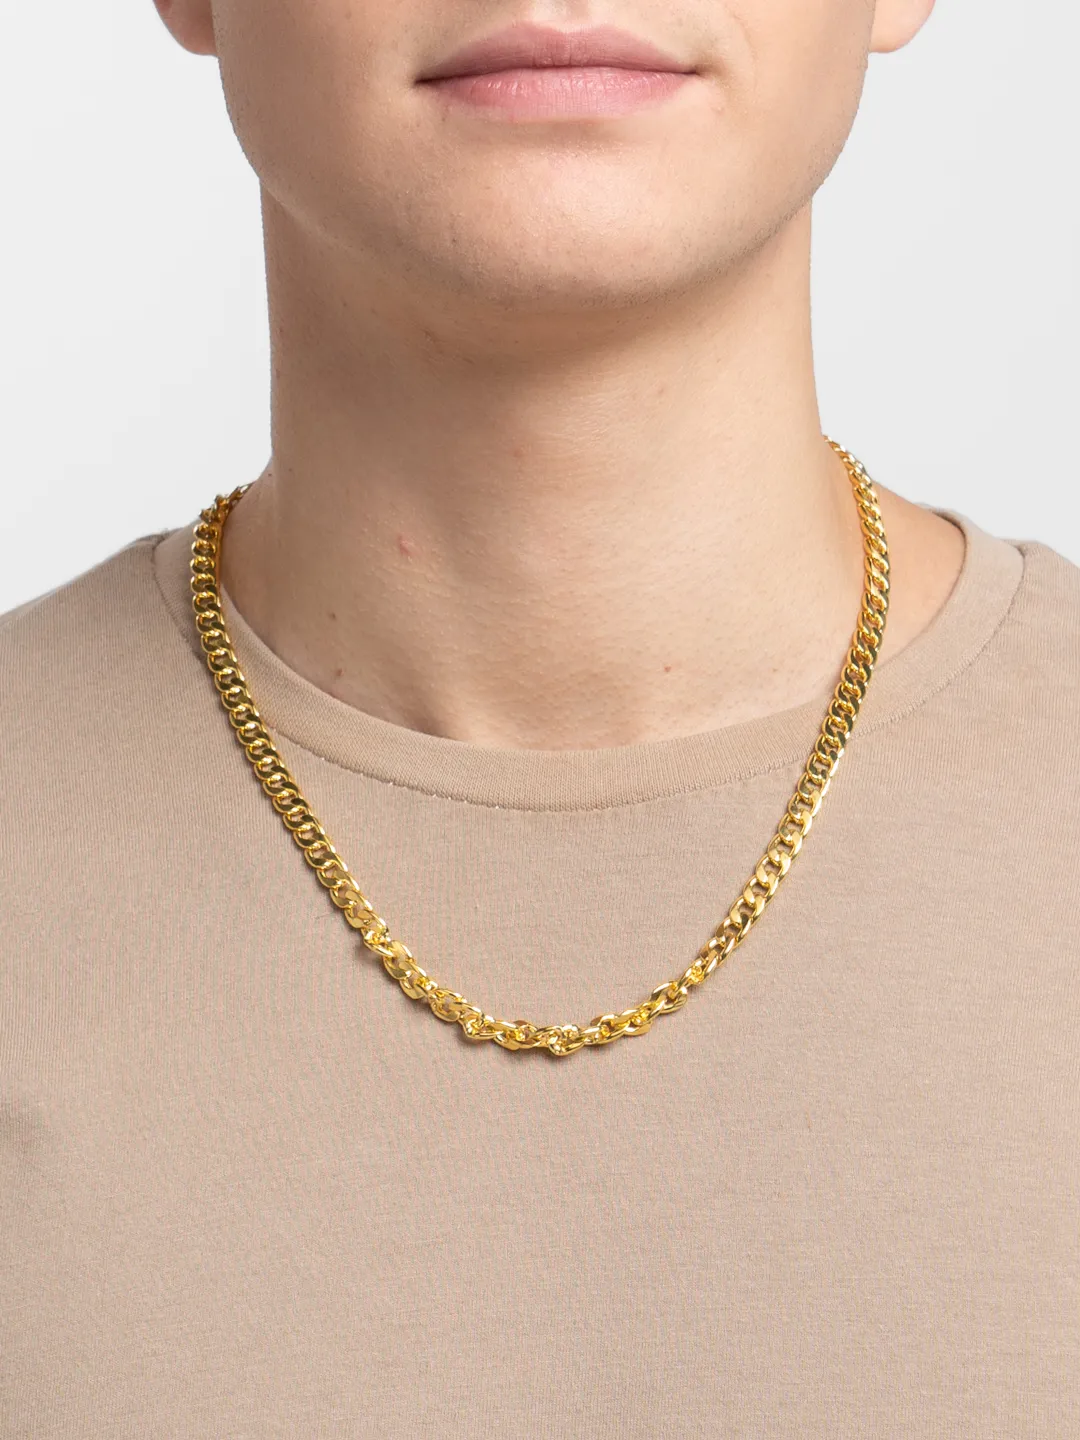 Цепочка золотая, толстая, браслет, и на шею за 221 ₽ купить винтернет-магазине ПСБ Маркет от Промсвязьбанка